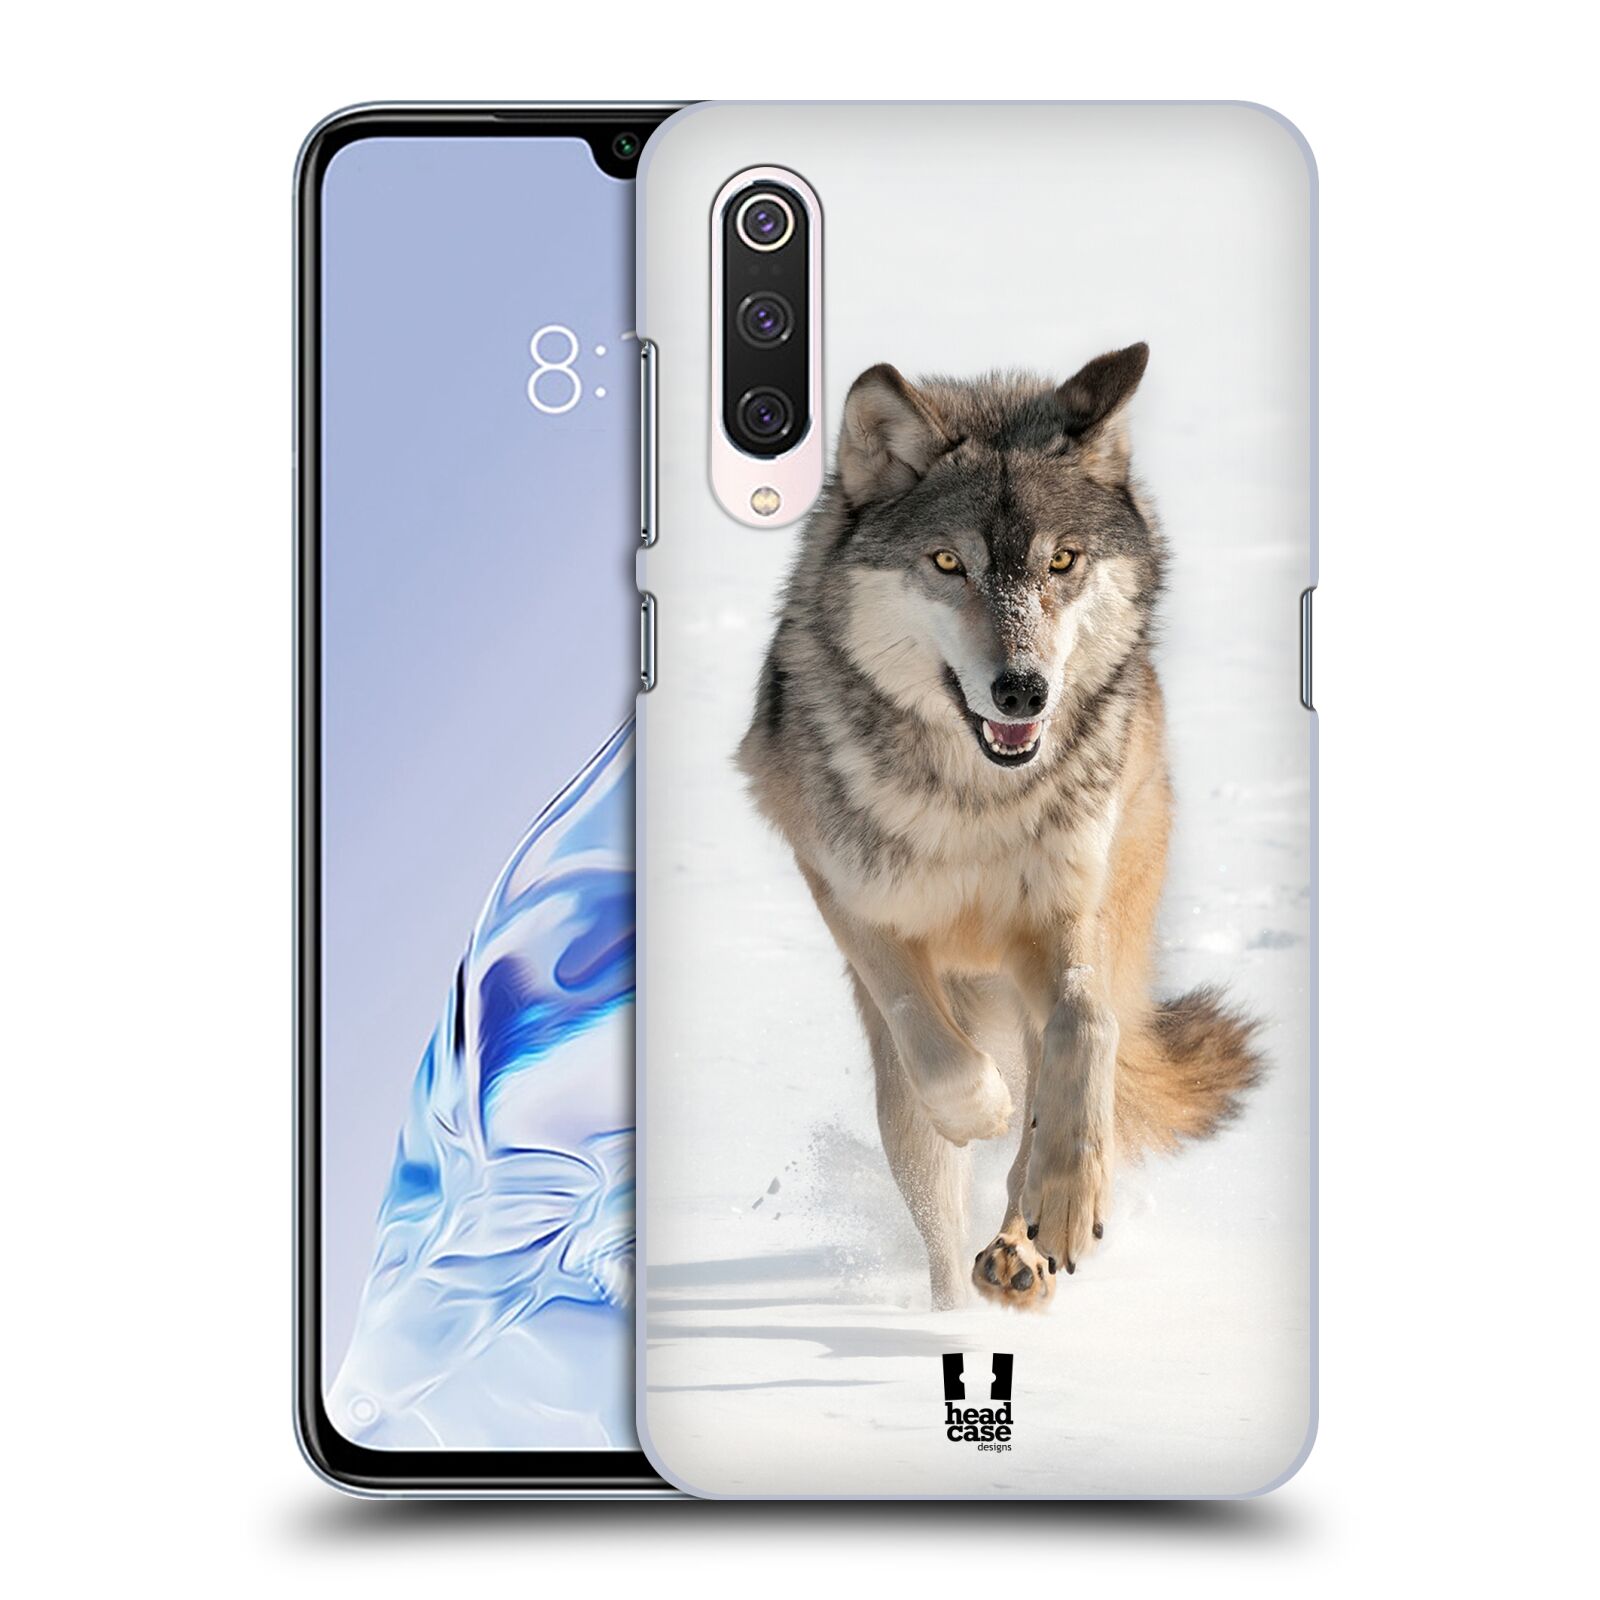 Zadní obal pro mobil Xiaomi Mi 9 PRO - HEAD CASE - Svět zvířat divoký vlk